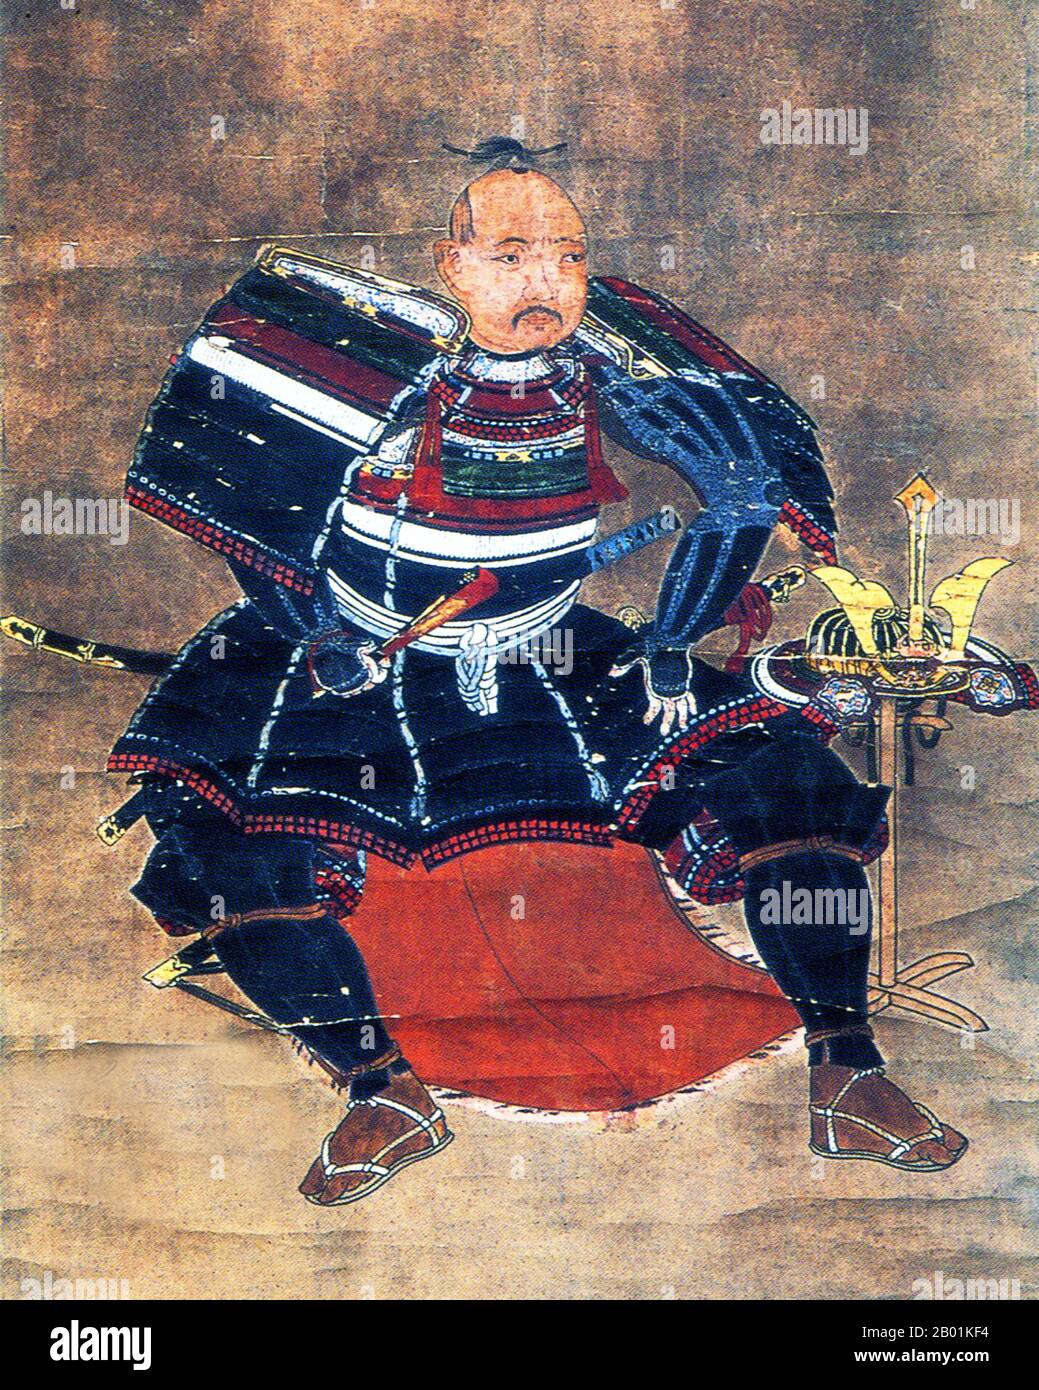 Japan: Hängendes Rollbild, das traditionell von Kira Yoriyasu (-10 Januar 1562) stammt, heute von Takeda Shingen (1. Dezember 1521 – 13. Mai 1573), Anfang des 17. Jahrhunderts. Takeda Shingen aus der Provinz Kai war ein bedeutender Daimyo im feudalen Japan mit außergewöhnlichem militärischem Prestige in der späten Phase der Sengoku-Zeit. Bekannt als „Tiger of Kai“, war er einer der mächtigsten und einflussreichsten Führer der Ära. Er ist berühmt für die Schlacht von Mikatagahara, wo er Tokugawa Ieyasu erfolgreich besiegte und dem zukünftigen Shogun eine seiner schlimmsten Niederlagen übergab. Stockfoto